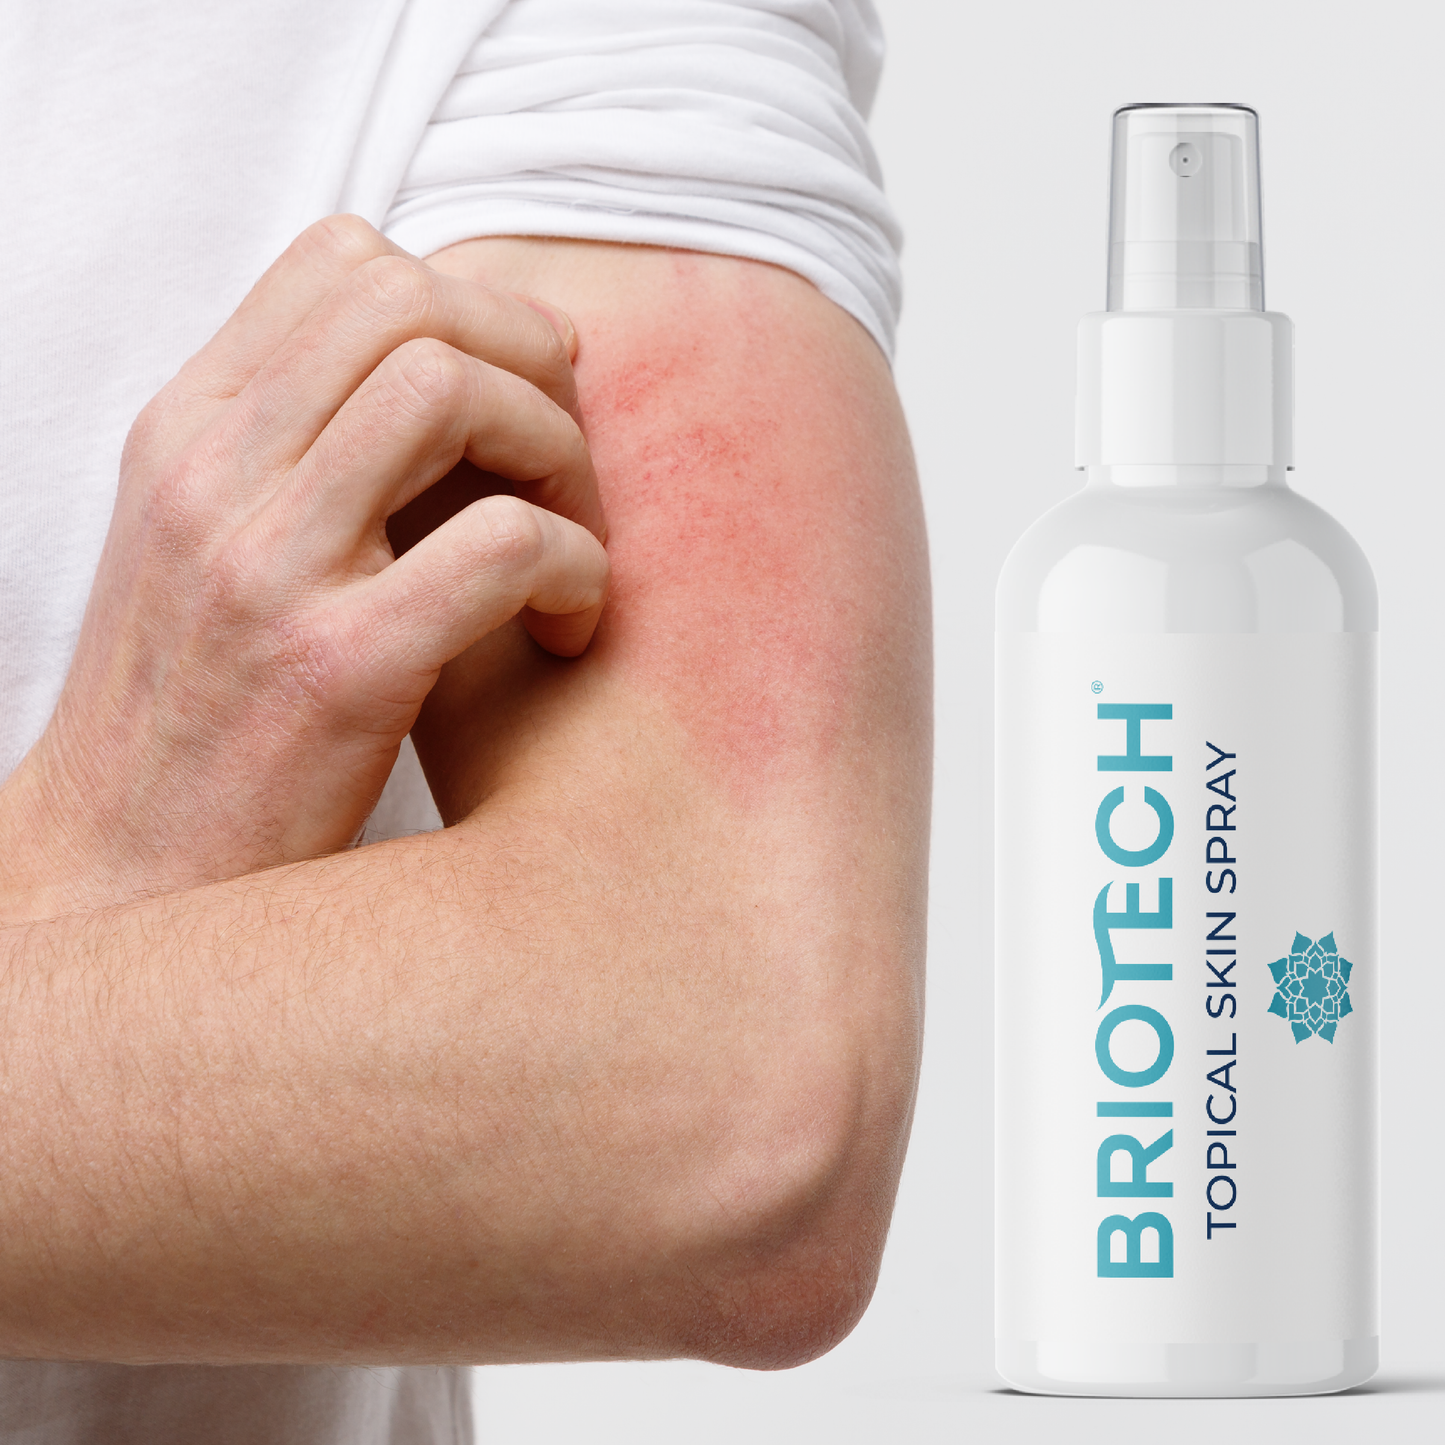 Briotech Topical Skin Spray